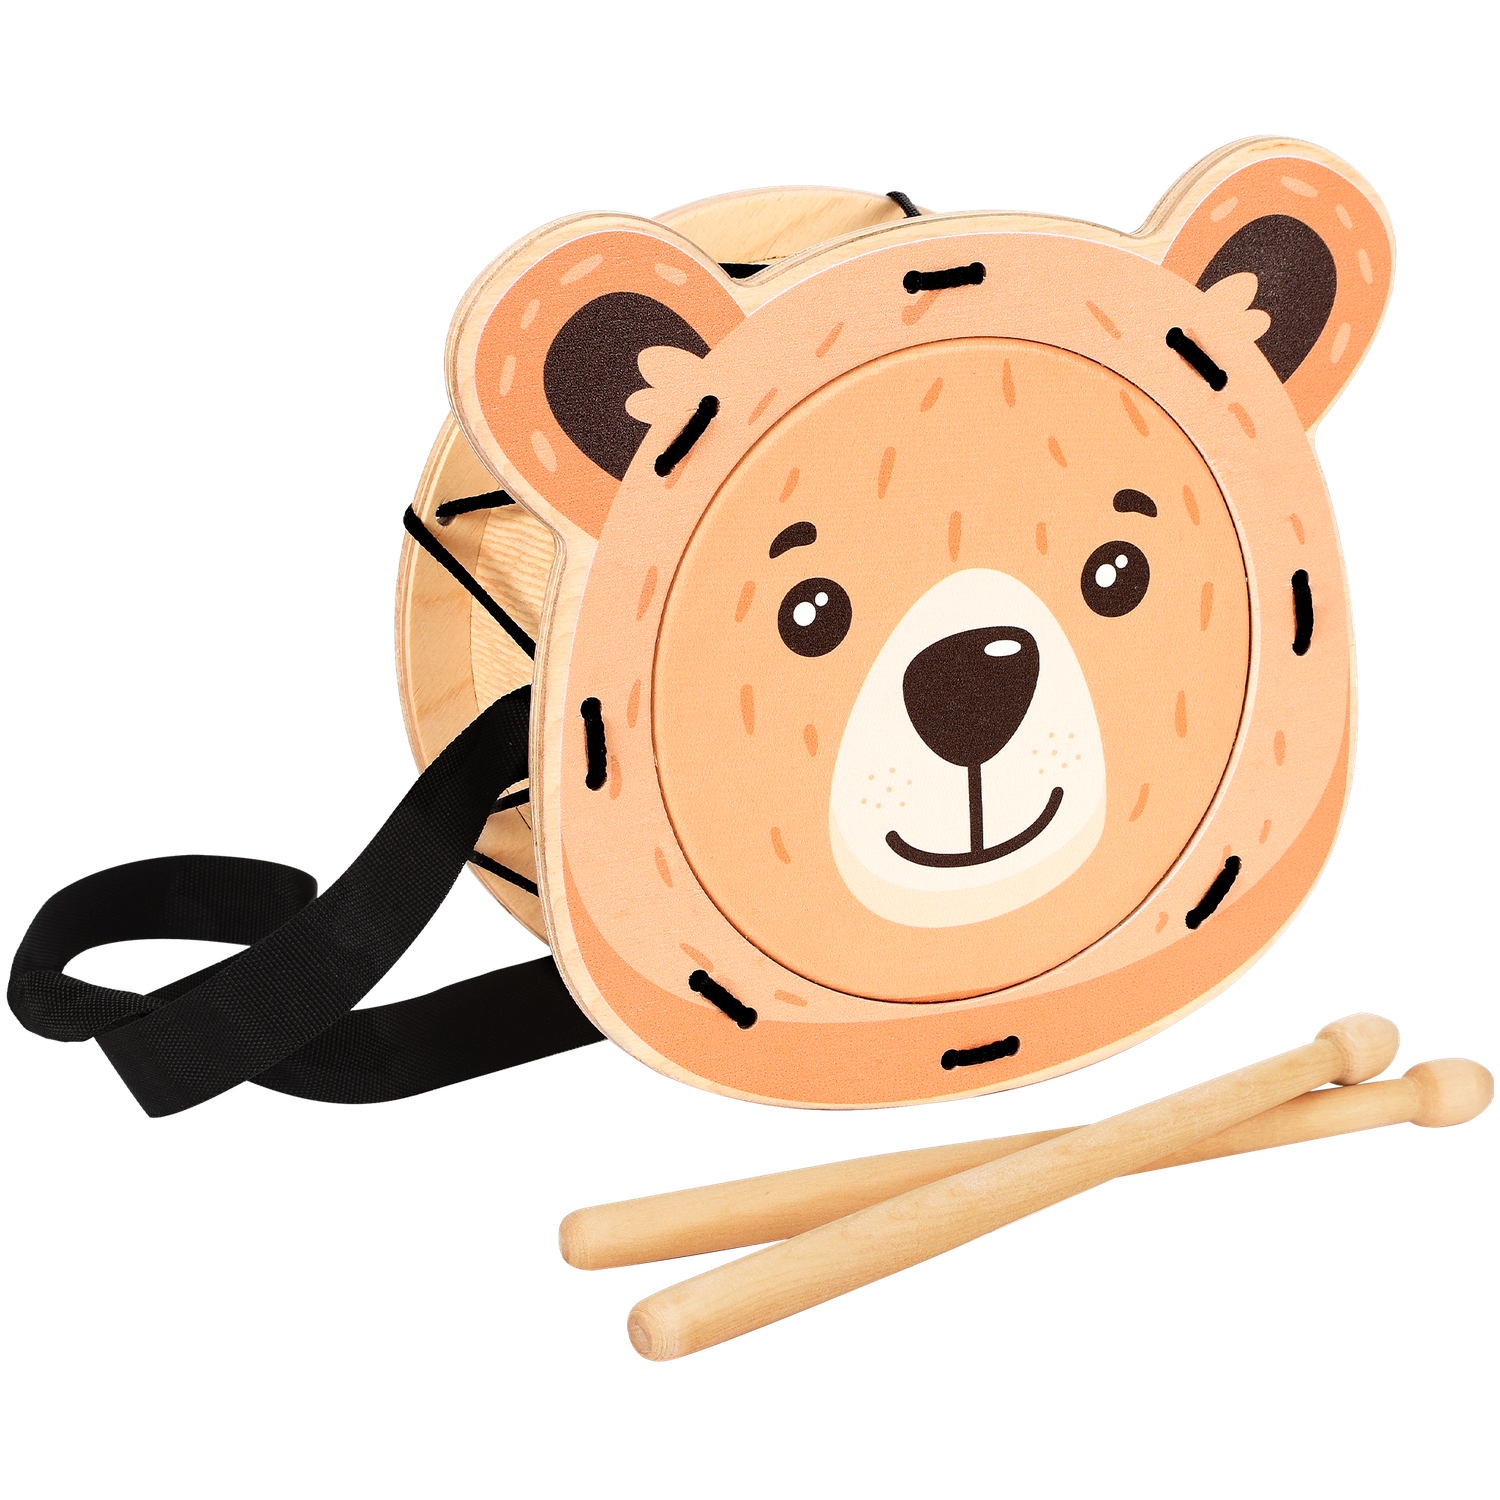 Музыкальный инструмент детский Мега Тойс деревянный барабан игрушка Мишка - фото 1